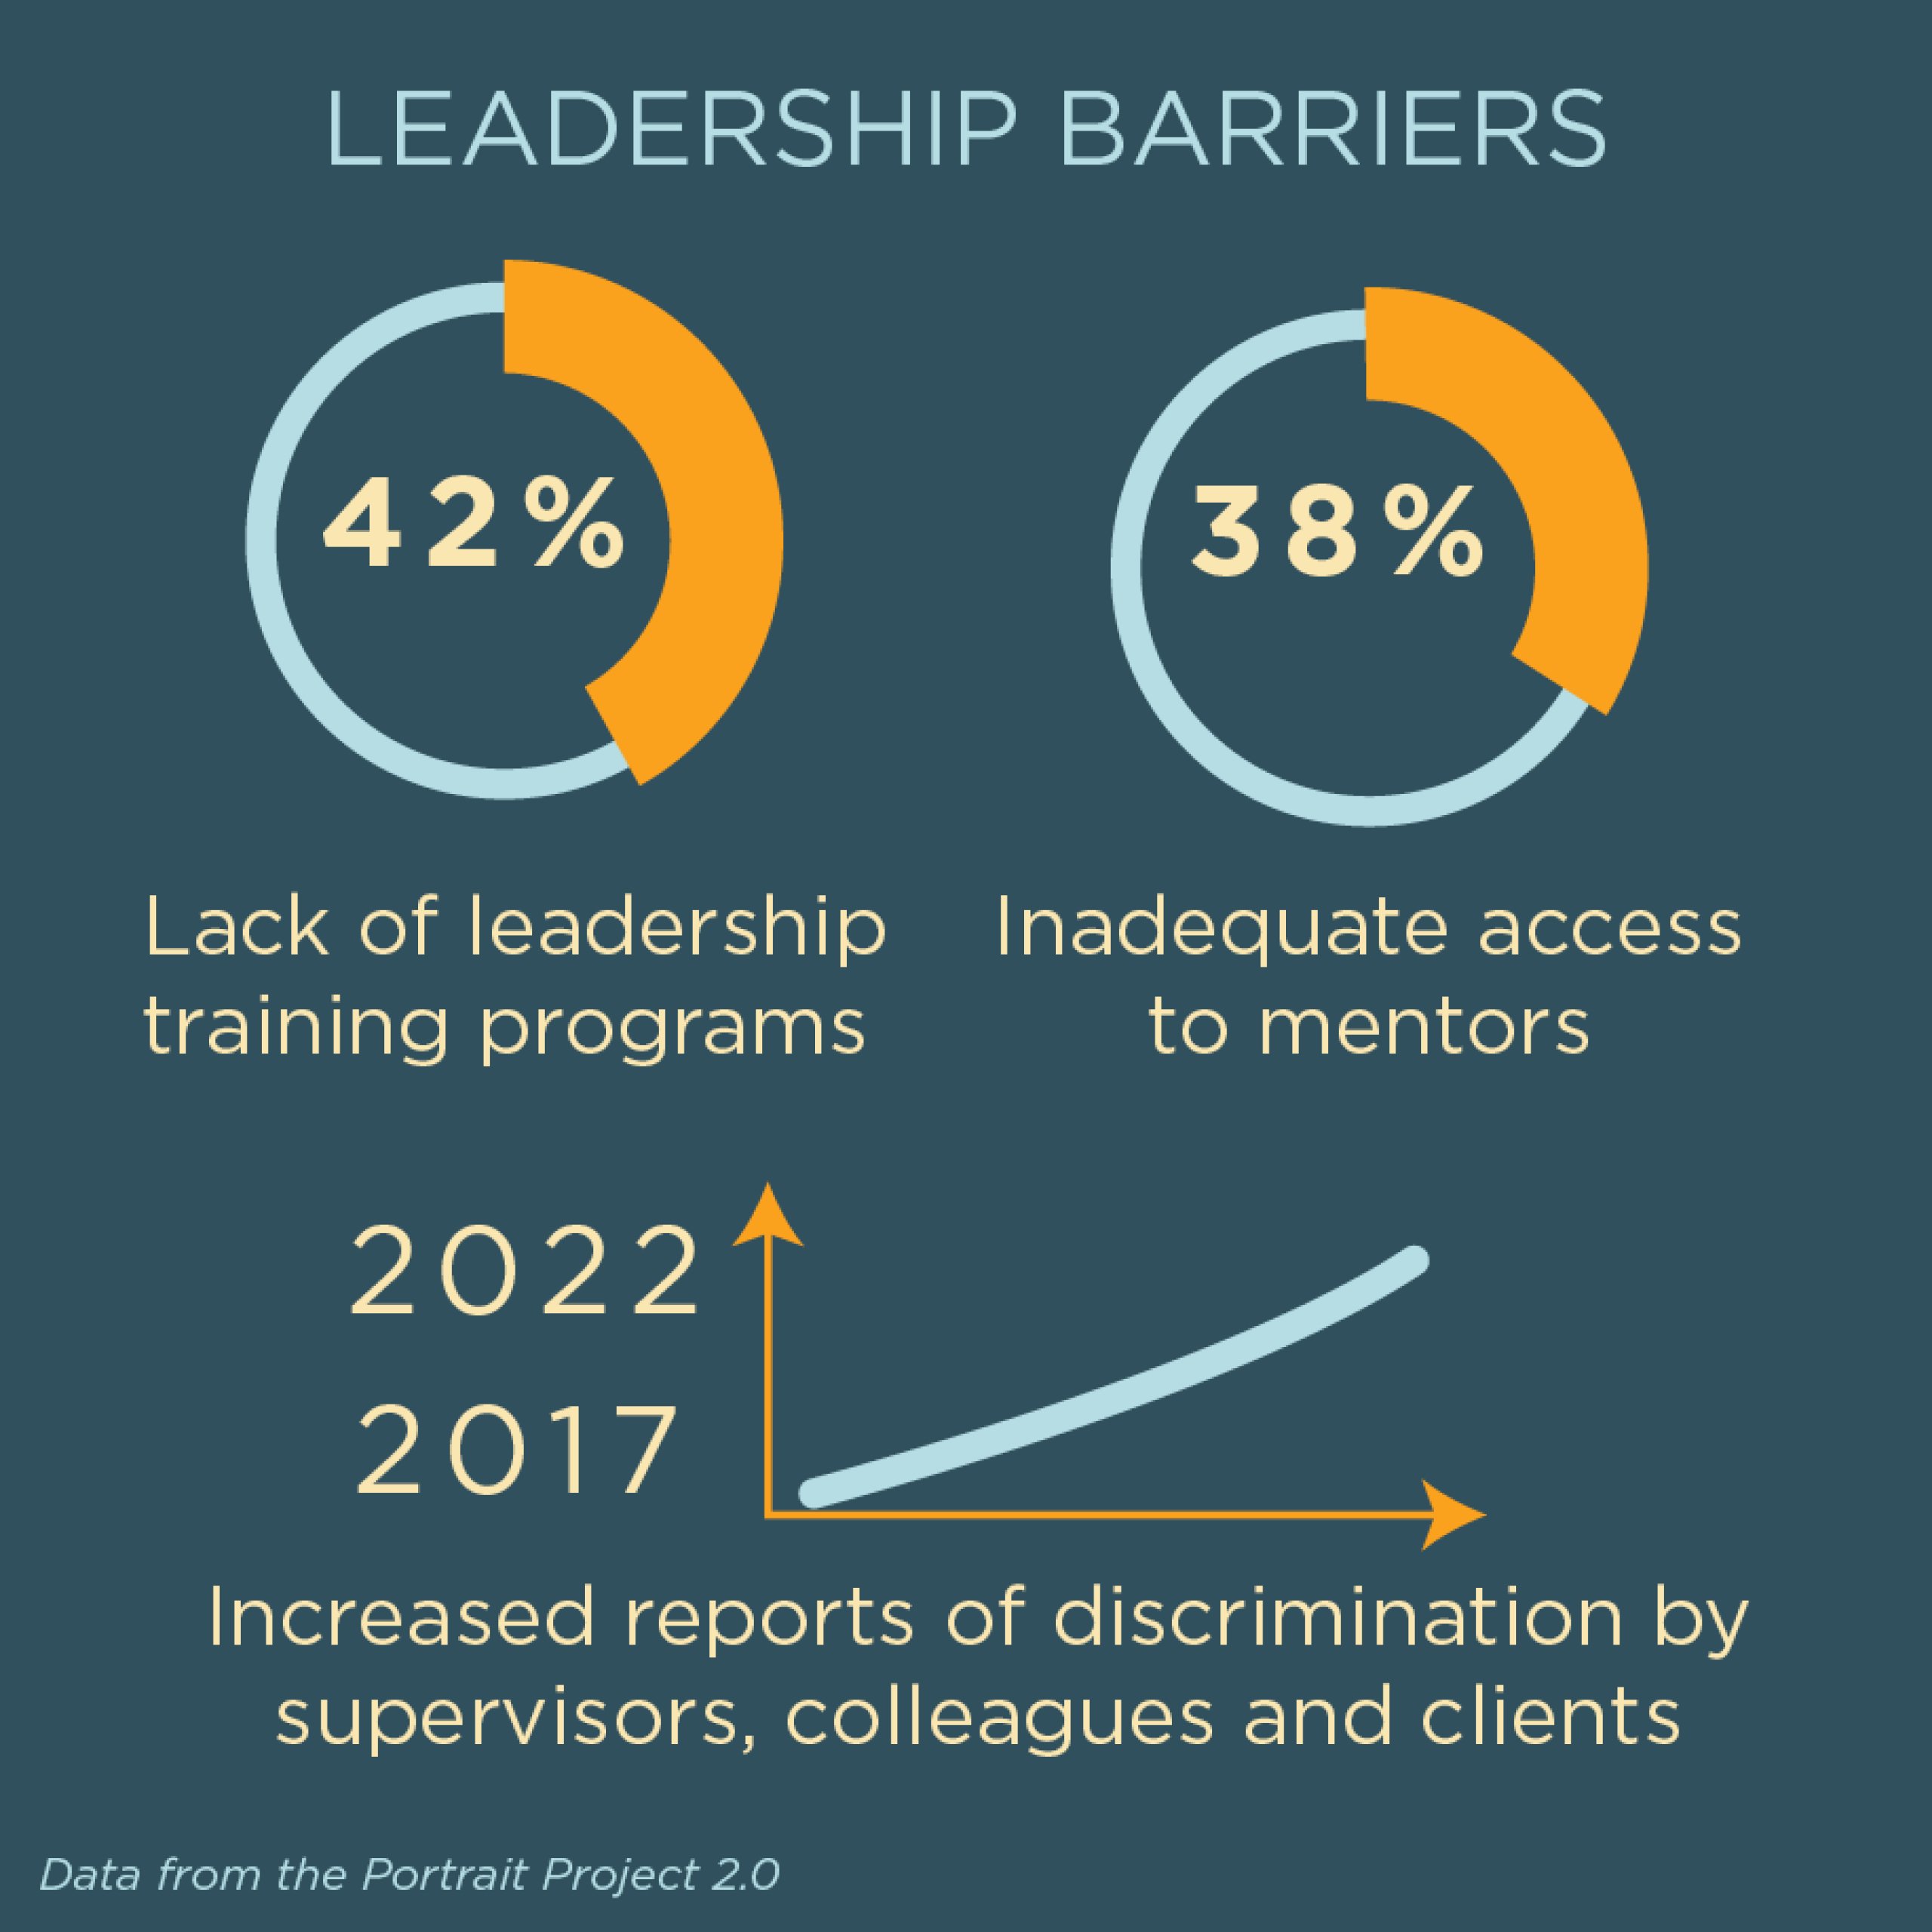 Leadership barriers